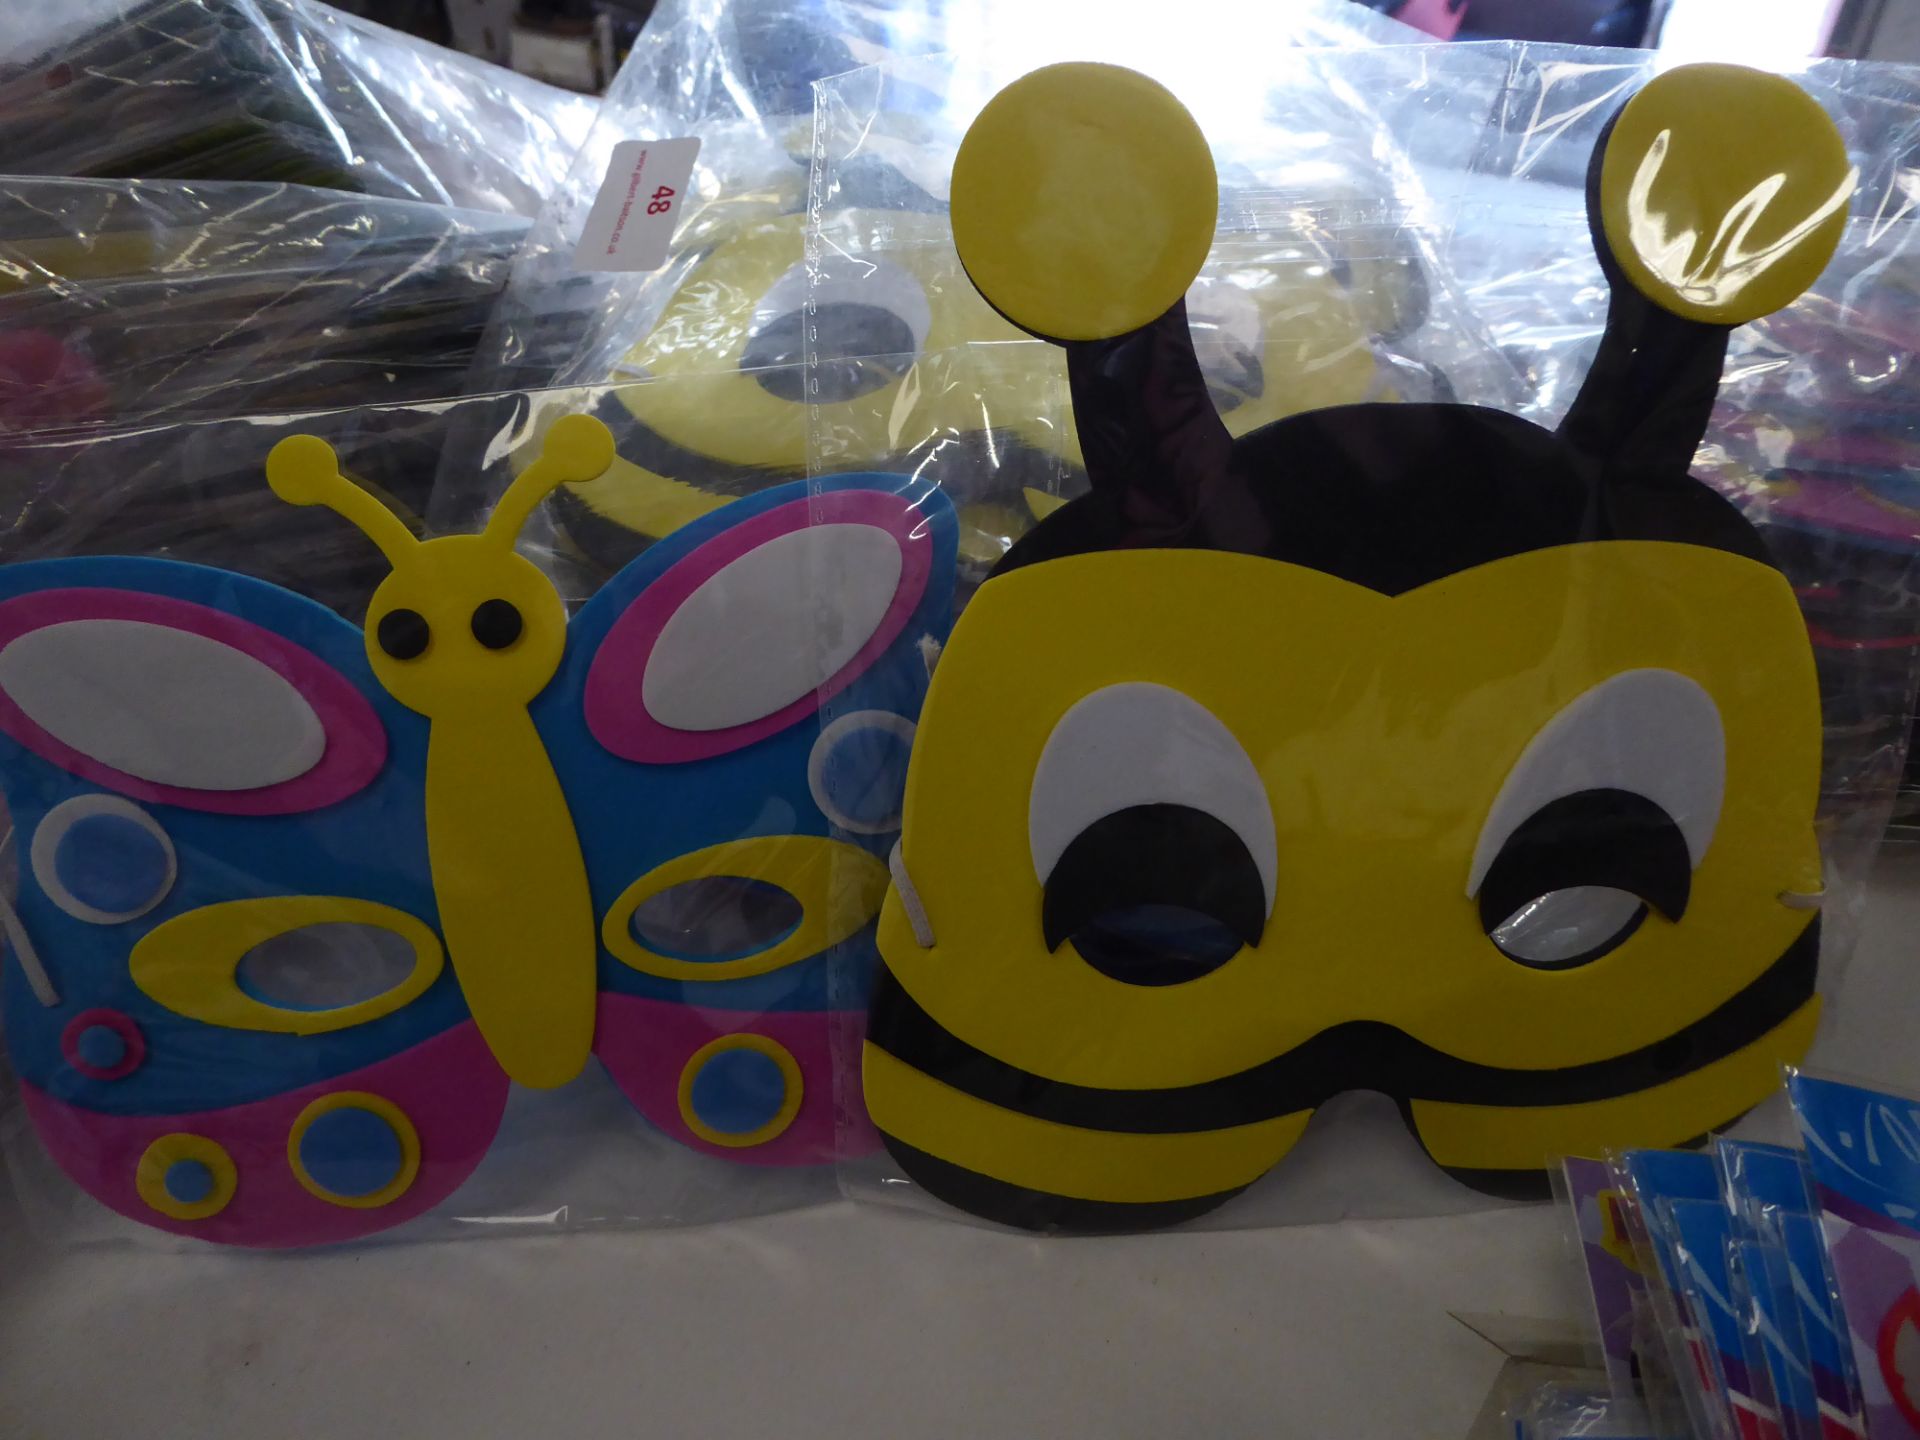 *foam kids character masks - bee's/butterfly/ladybirds